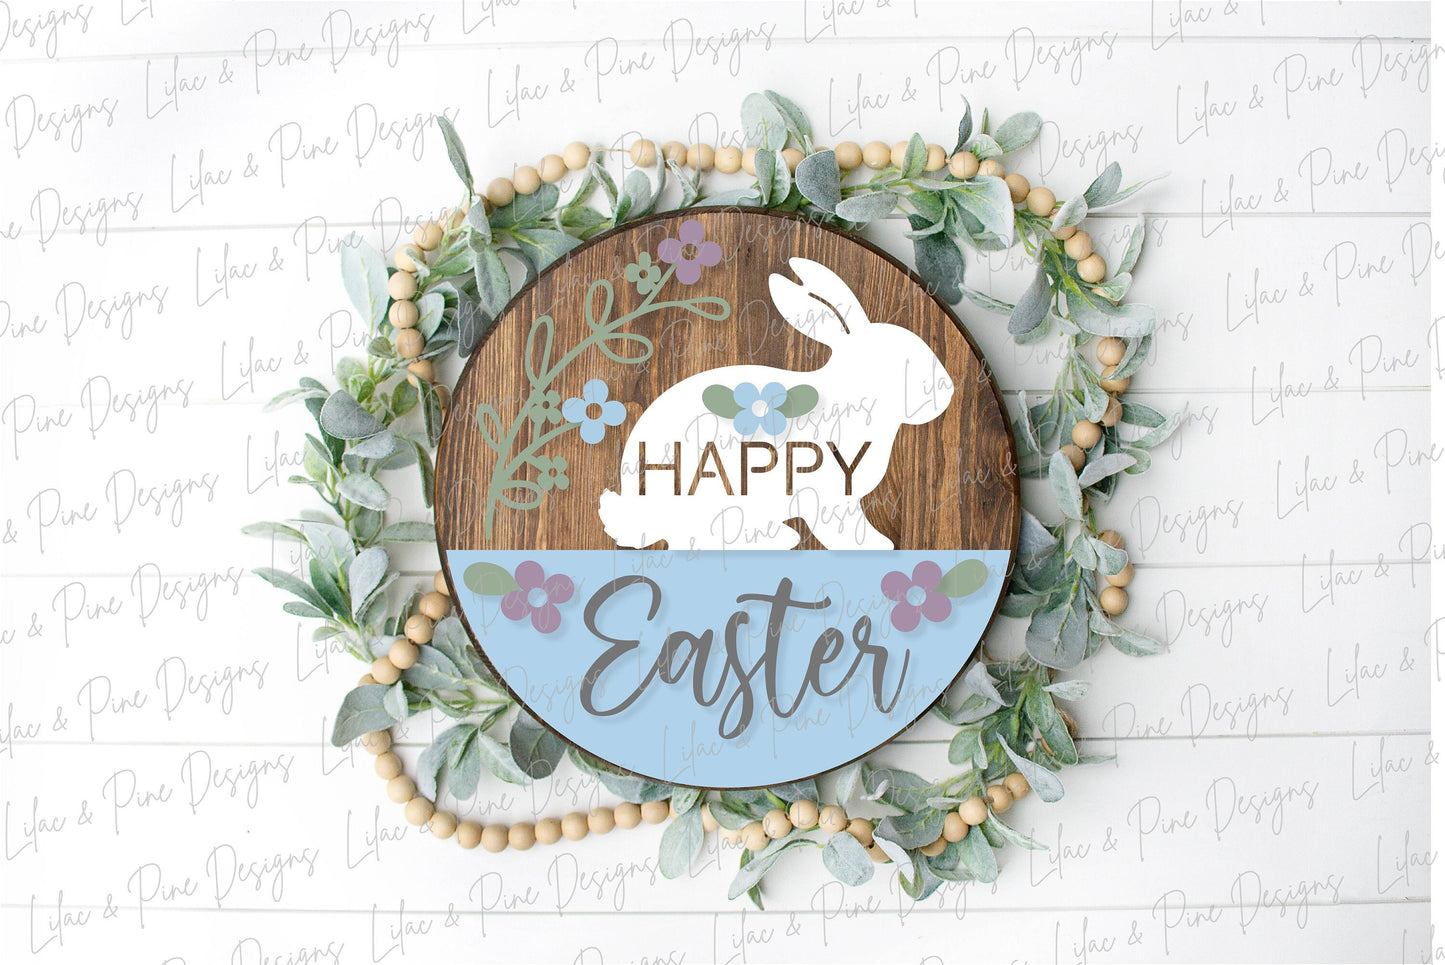 Happy Easter Welcome door hanger, Easter porch sign SVG, Easter bunny SVG, floral svg, Farmhouse Easter decor, Glowforge svg, laser cut file